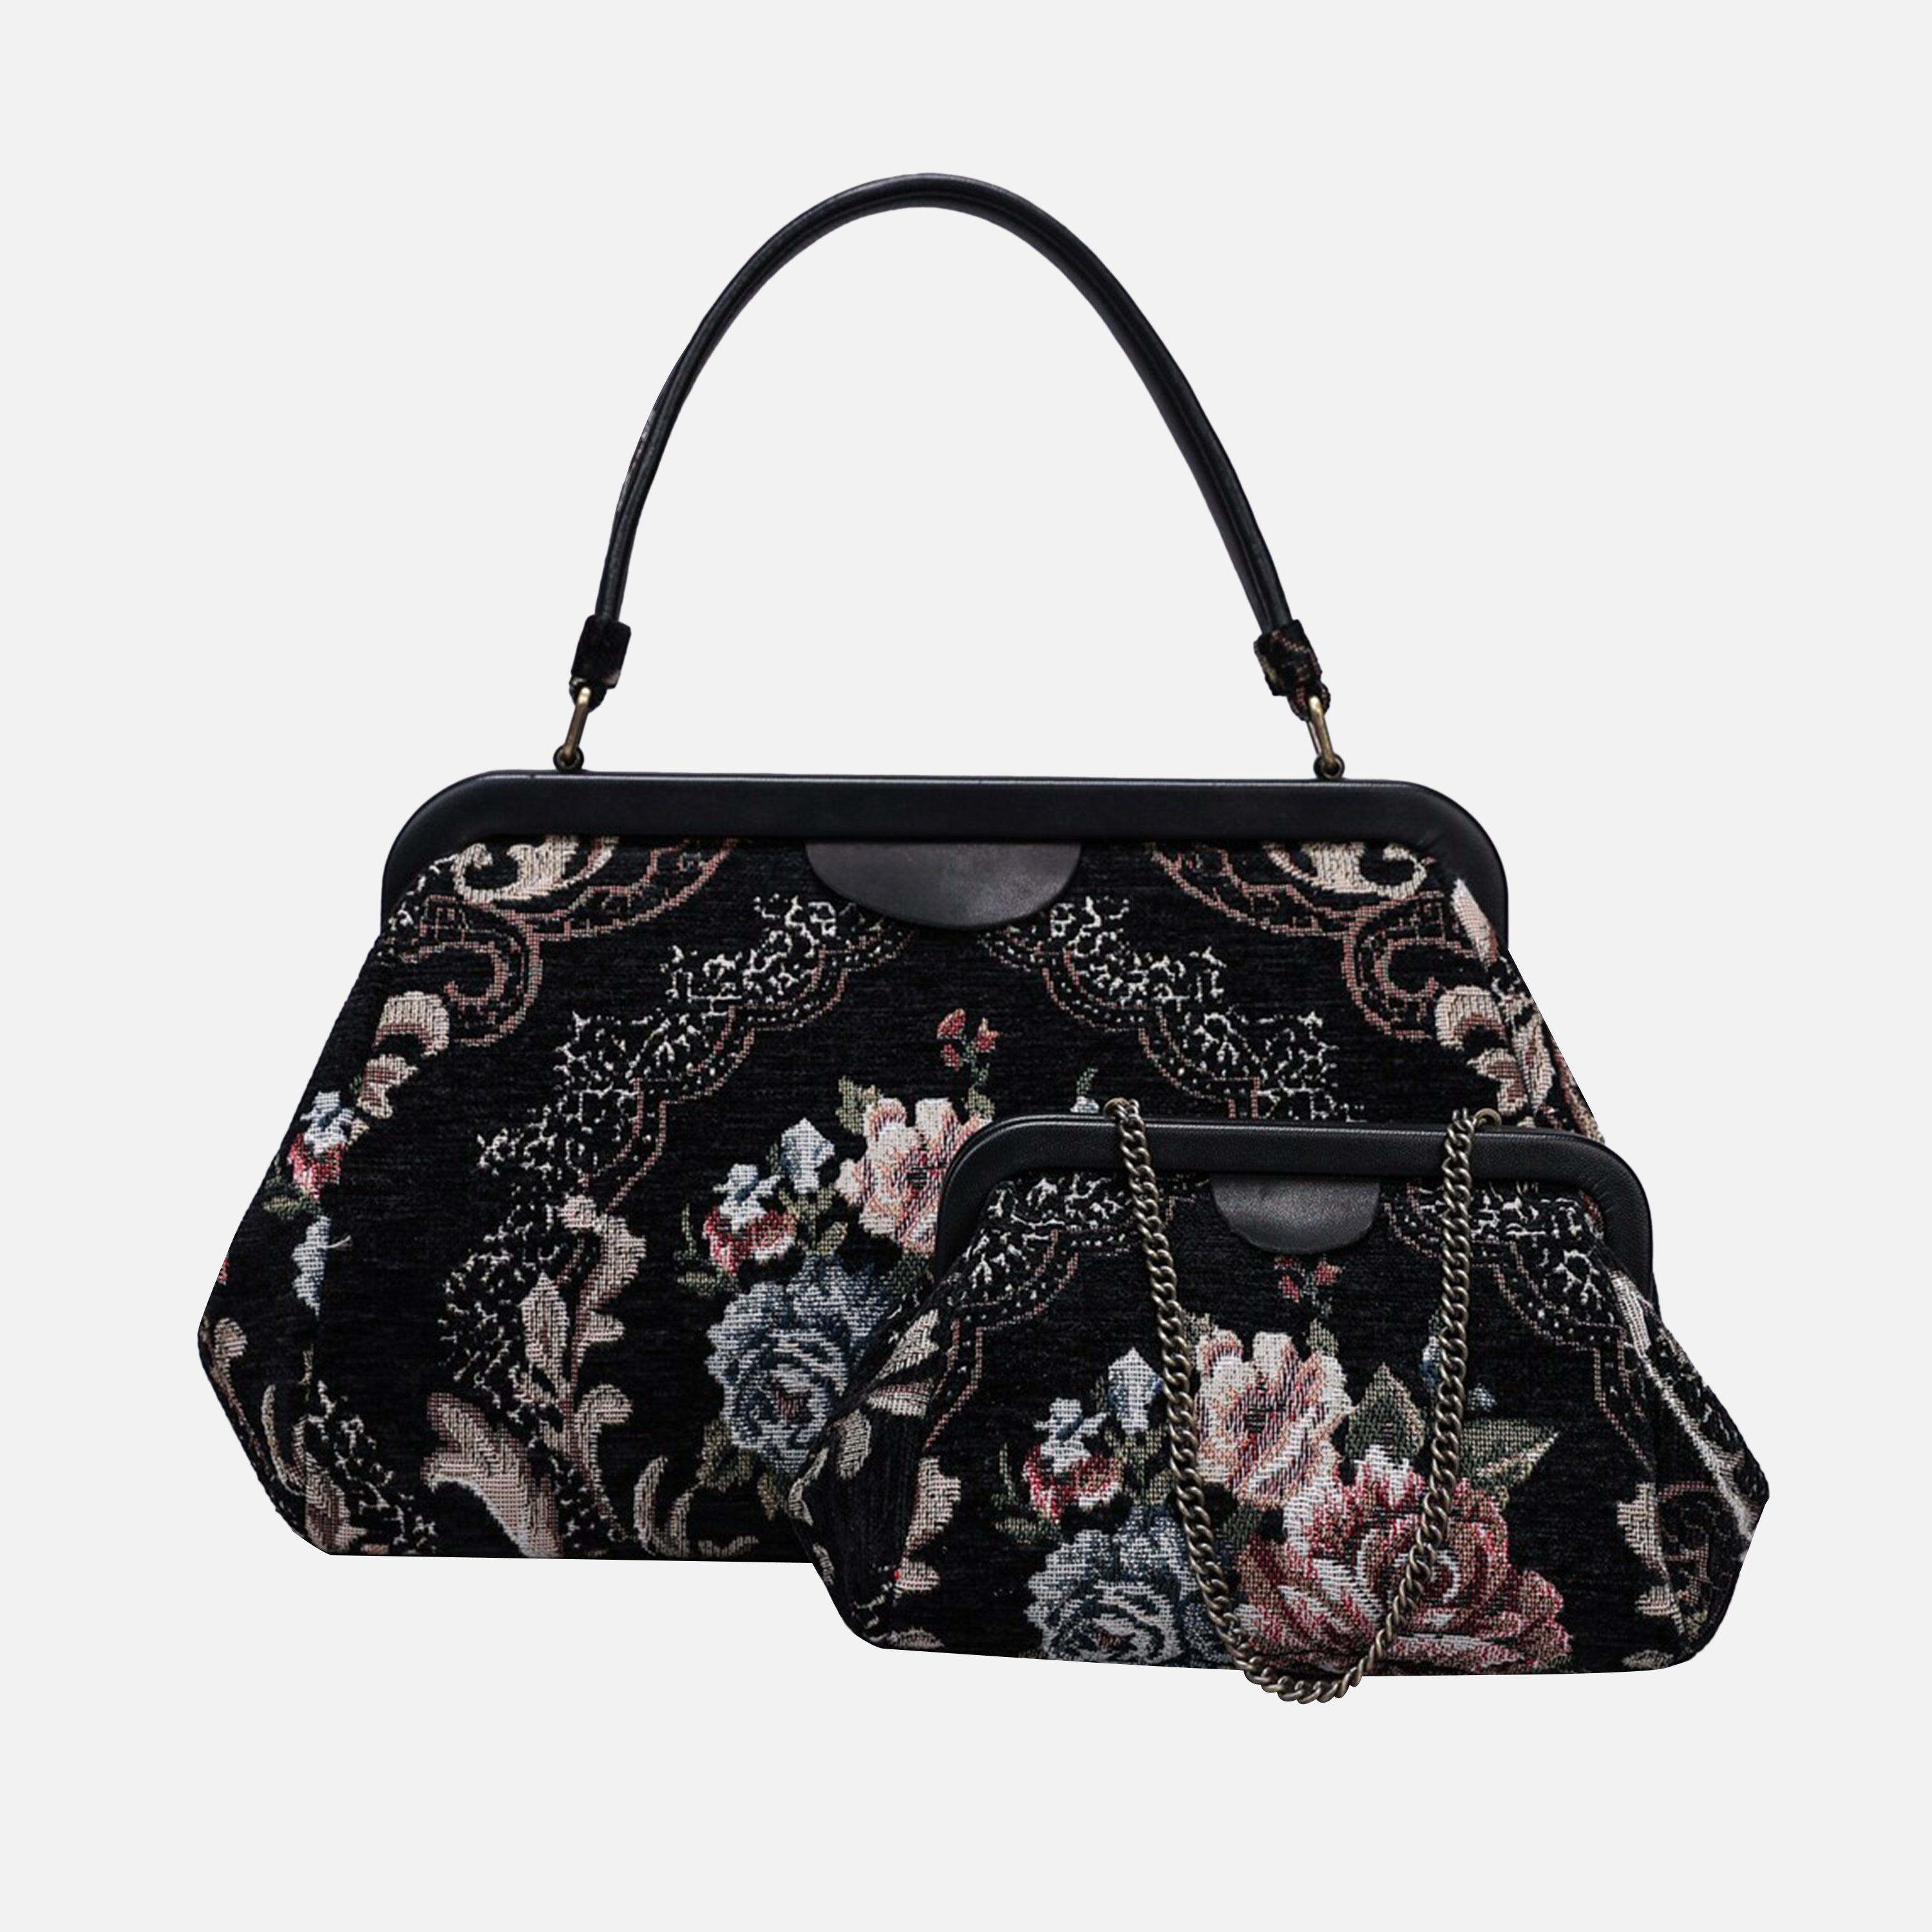 Floral Black Evening Bag Clutch carpet bag MCW Handmade-7